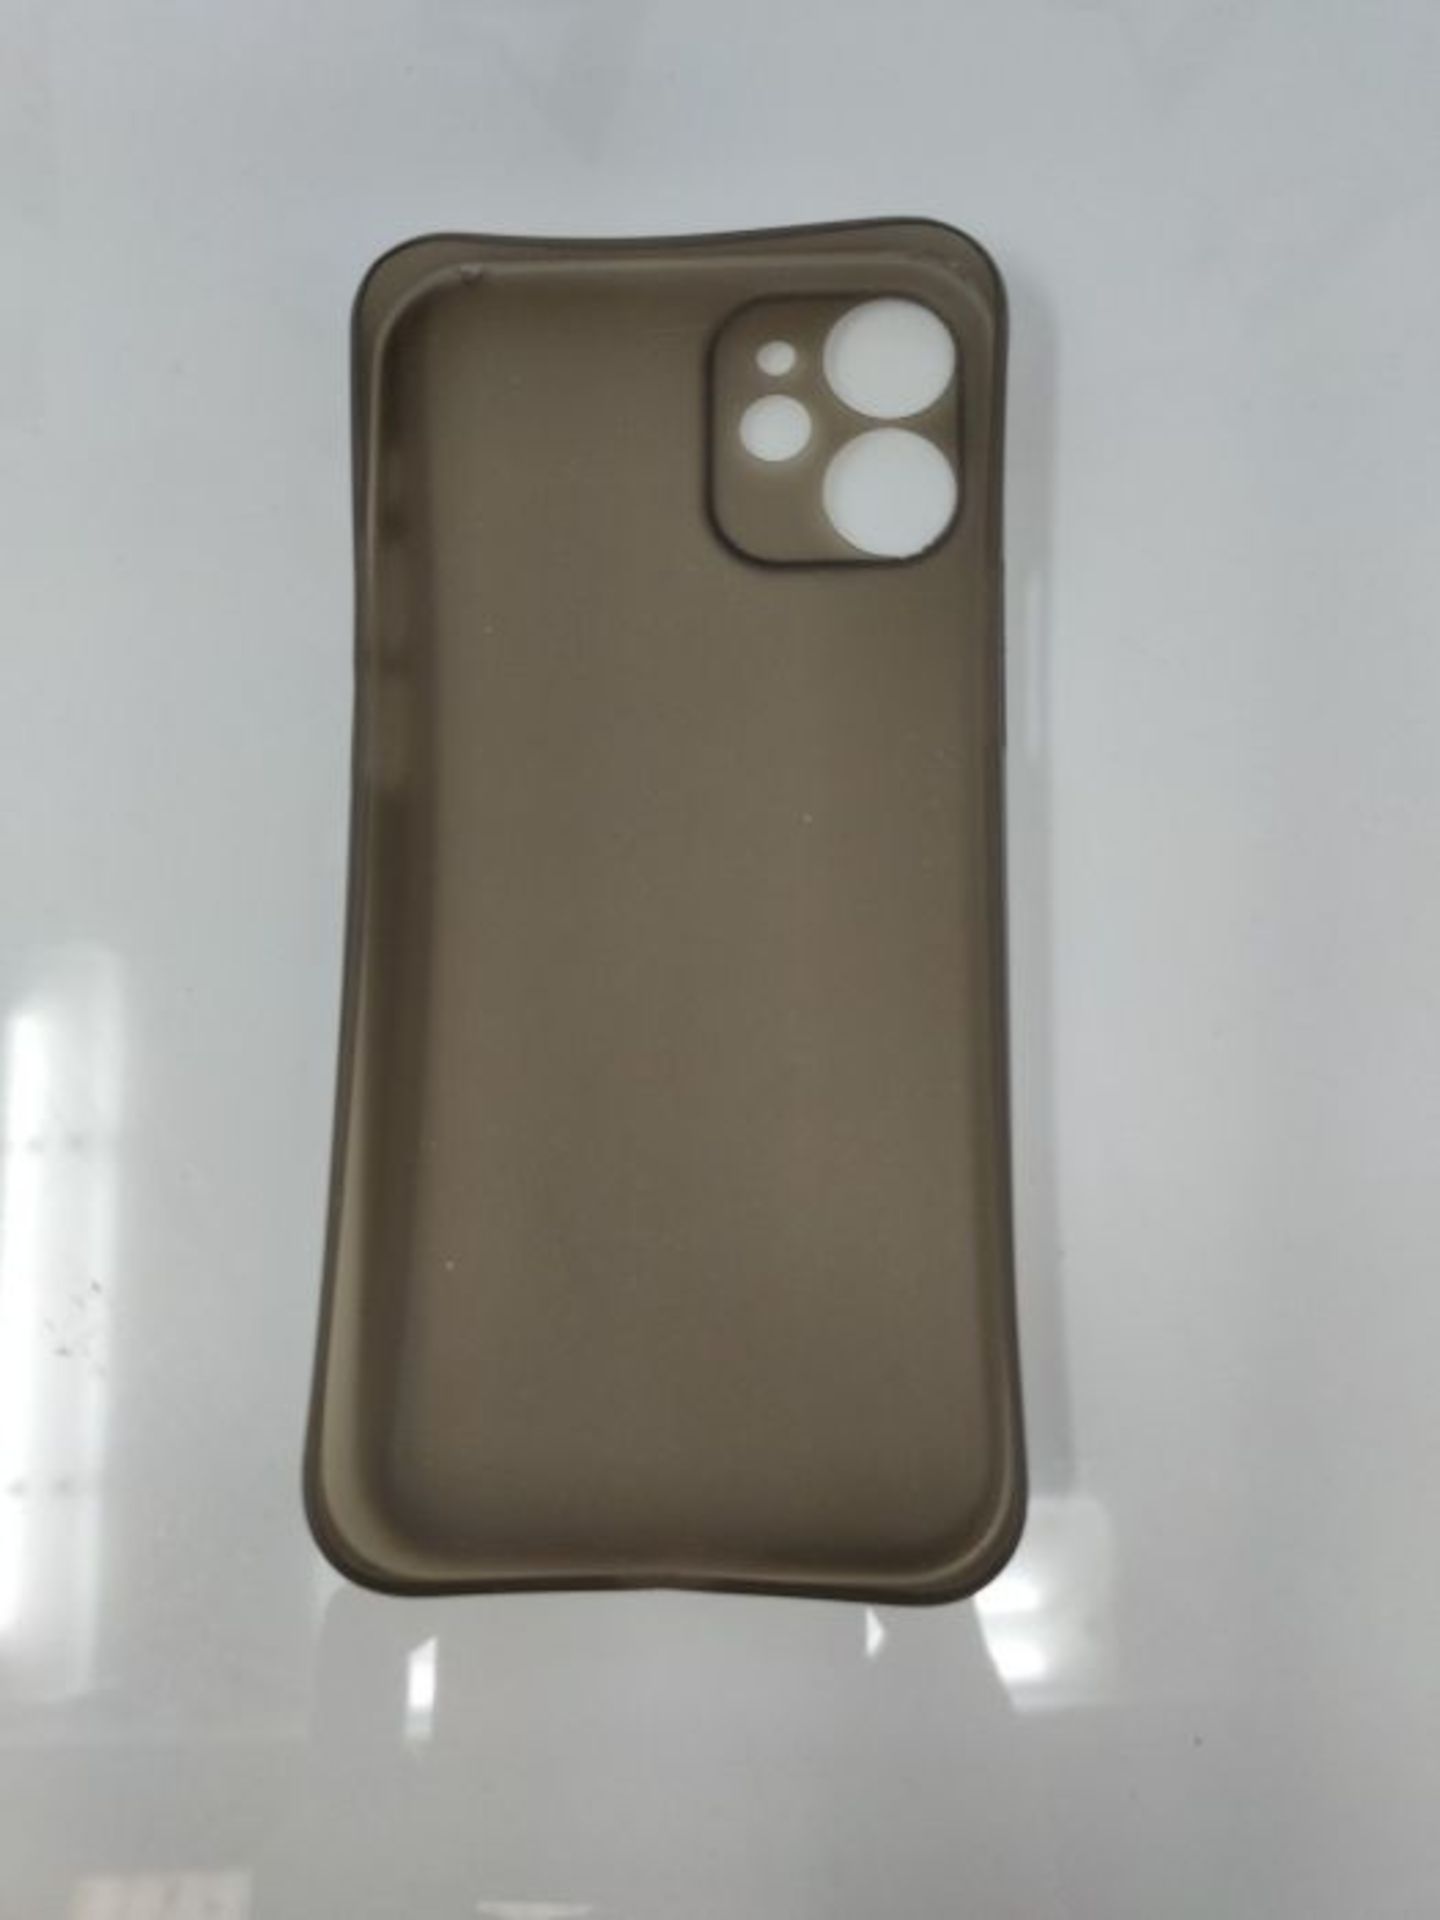 C�E�L�L�B�E�E� �i�P�h�o�n�e� �1�2� �M�i�n�i� �C�a�s�e� �-� �P�r�e�m�i�u�m� �S�l�i�m� �P�r�o�t�e�c�t� - Image 2 of 2